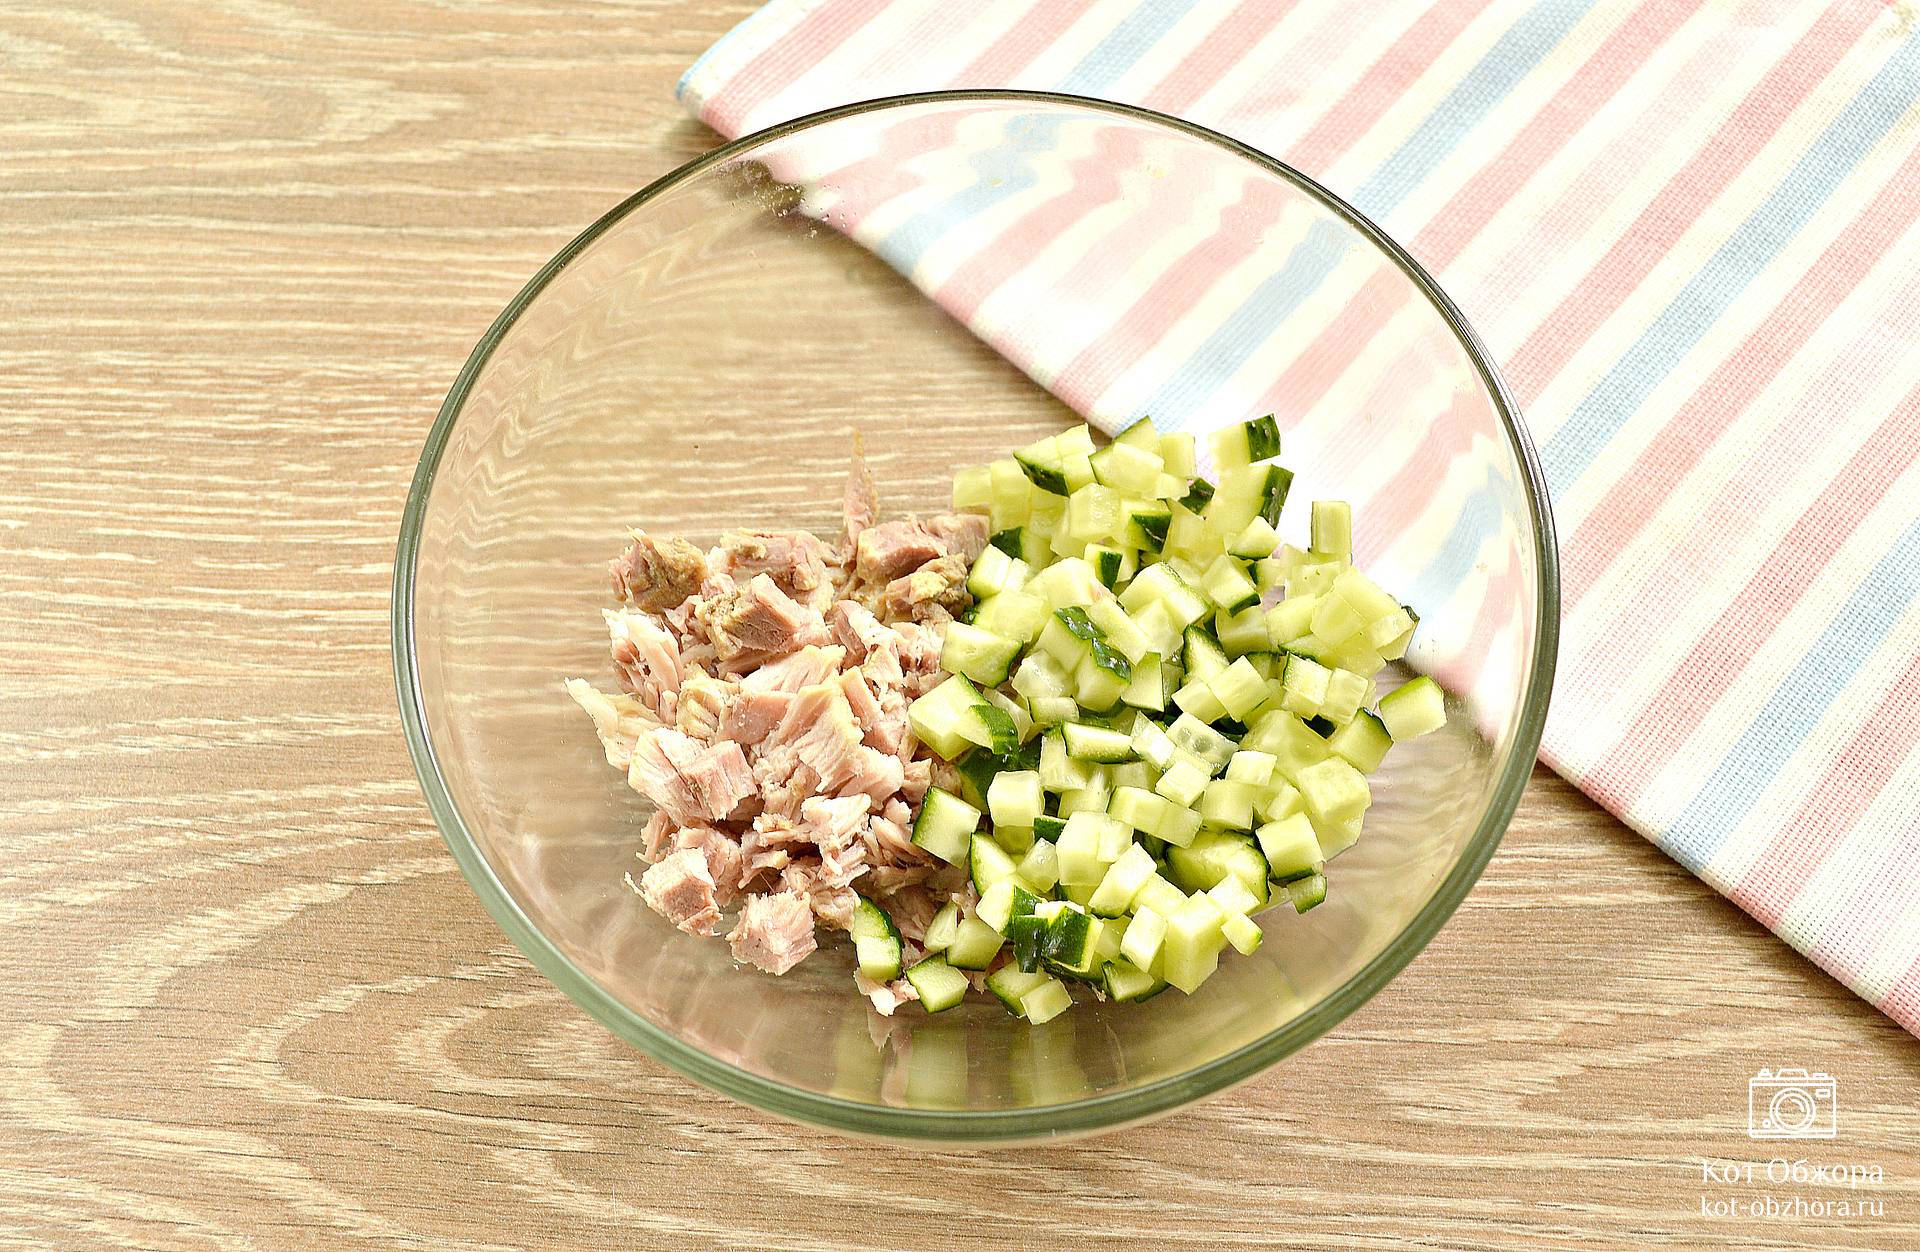 Оливье с колбасой и свежими огурцами ♛ оригинальный летний рецепт